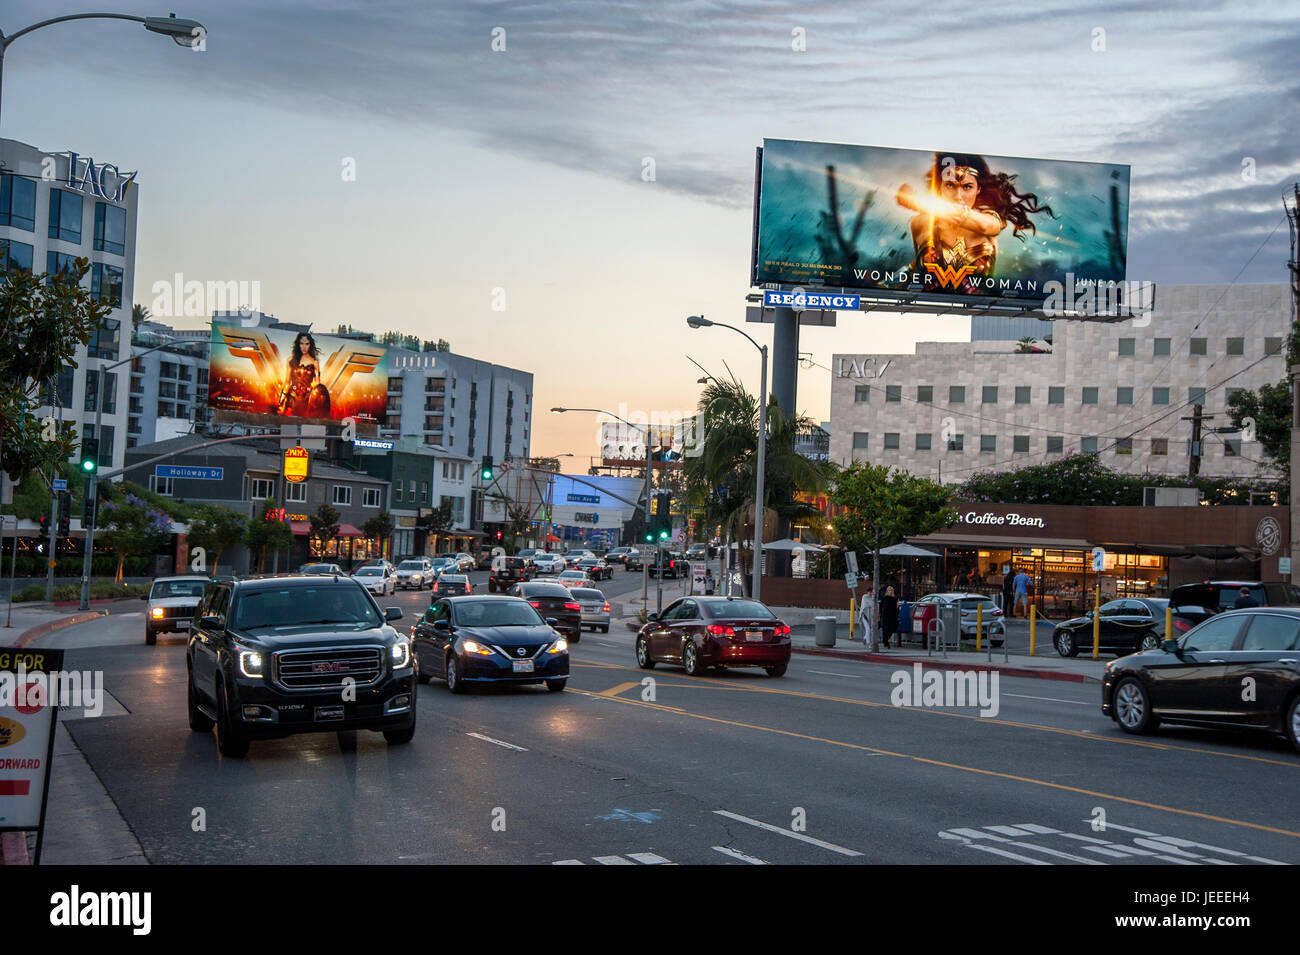 Der Sunset Strip in der Abenddämmerung mit beleuchteten Werbetafeln Förderung der Film Wonder Woman in Los Angeles, Kalifornien. Stockfoto